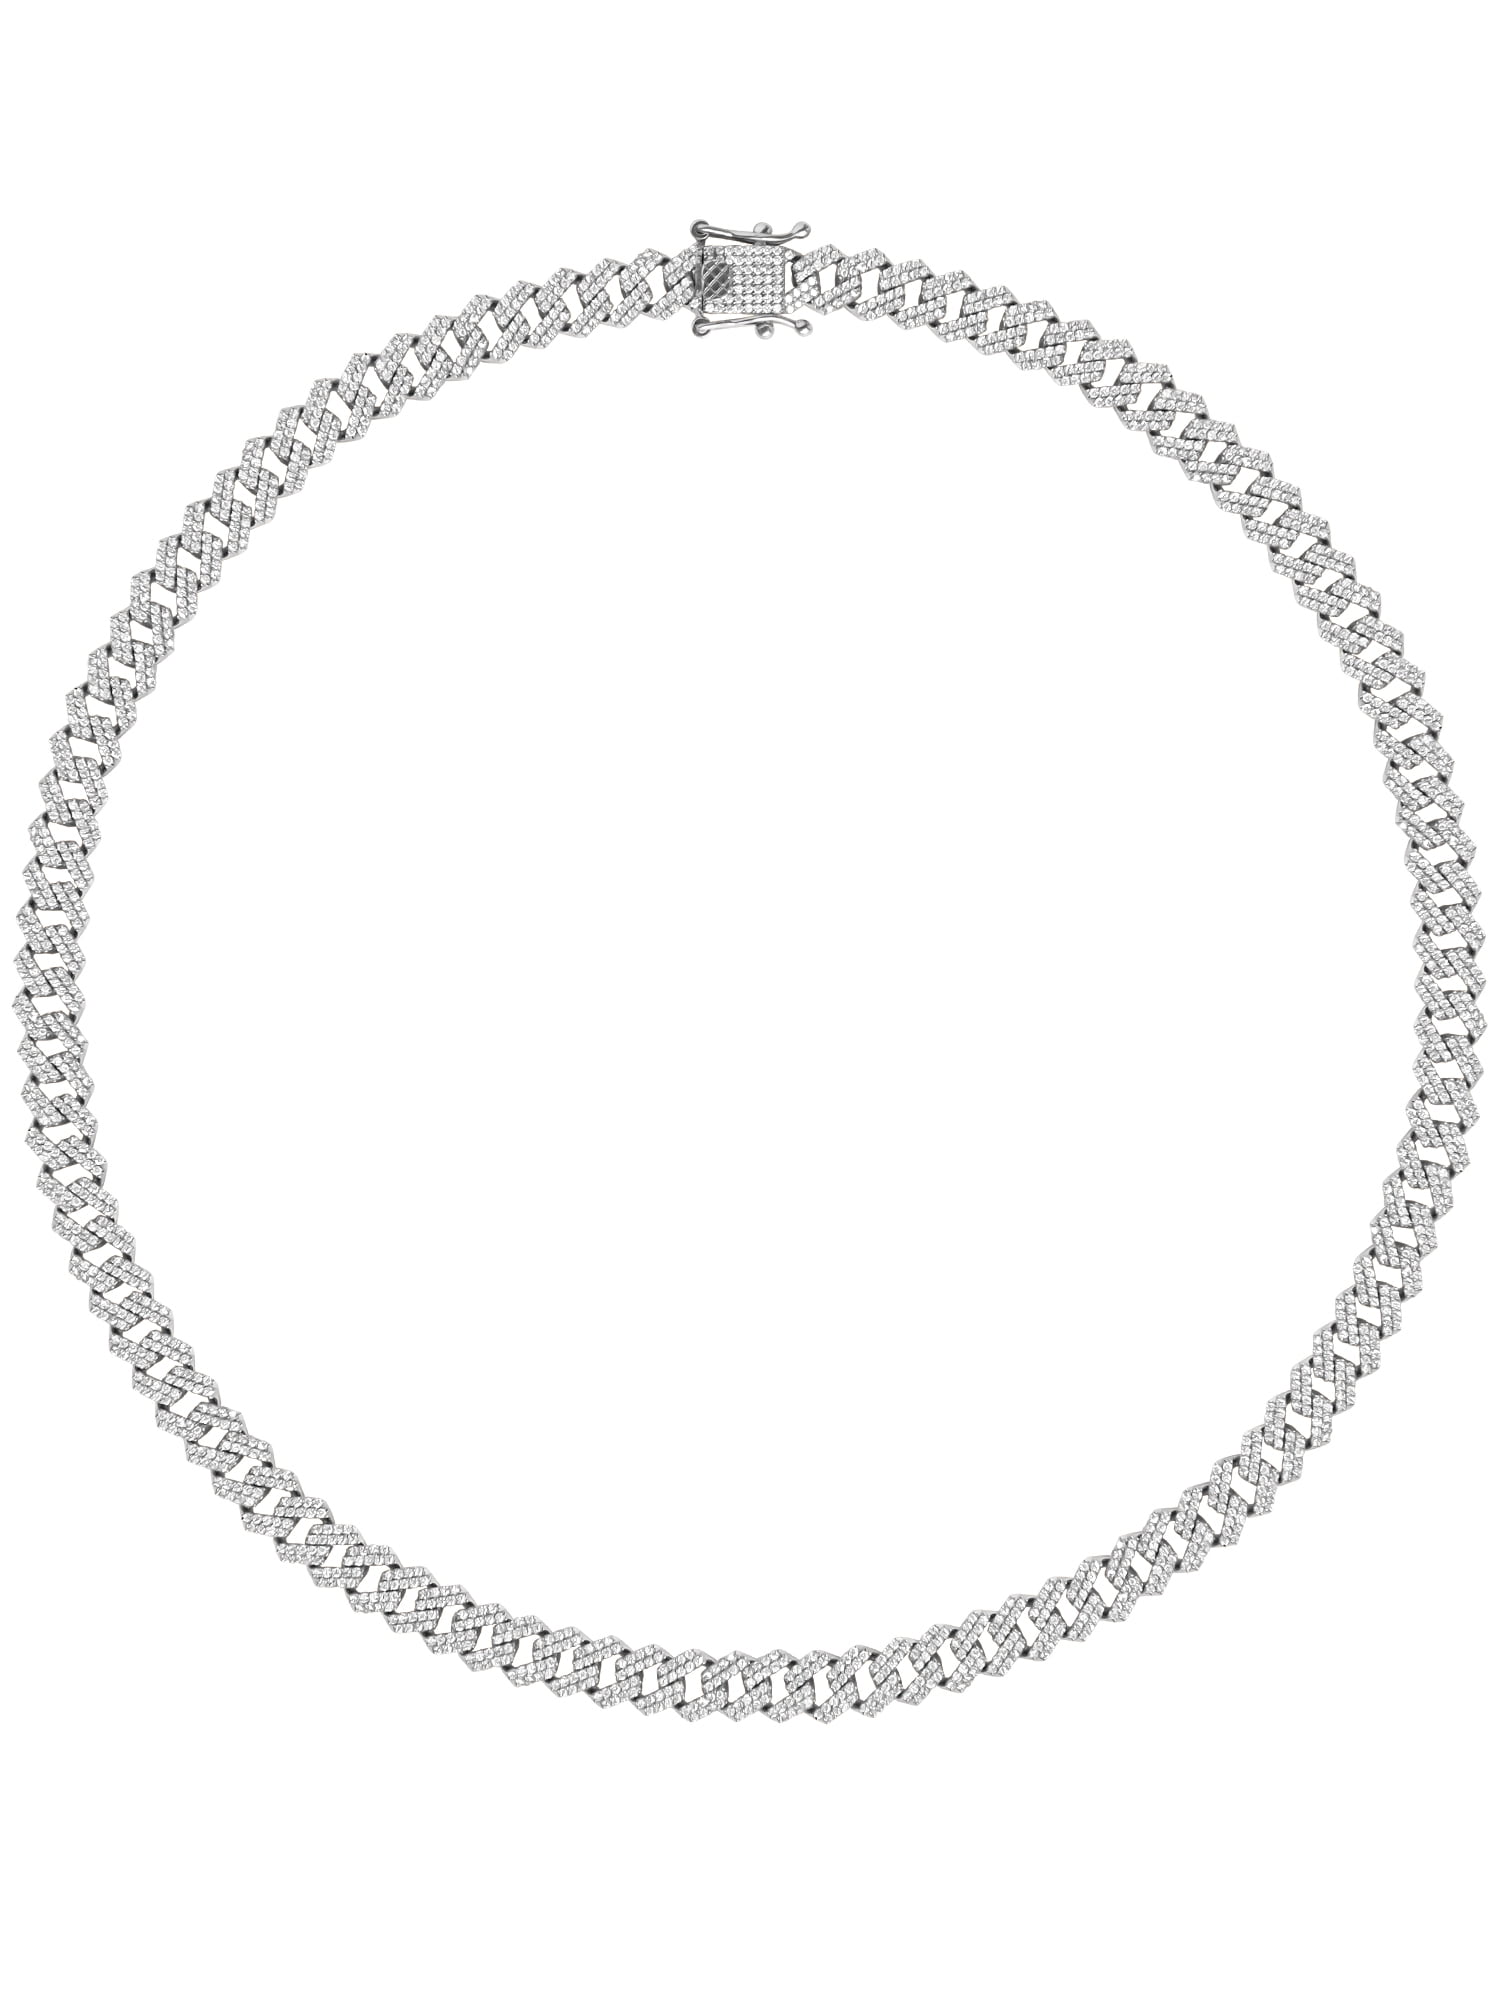 Shaquille O Neal Men s Simulated Diamond Sterling Silver Curb Chain Necklace 20 05b60262 ed1c 4d1b ba1b d18a6f613945.ff2daac3a88bf74a78f962301cae2fac